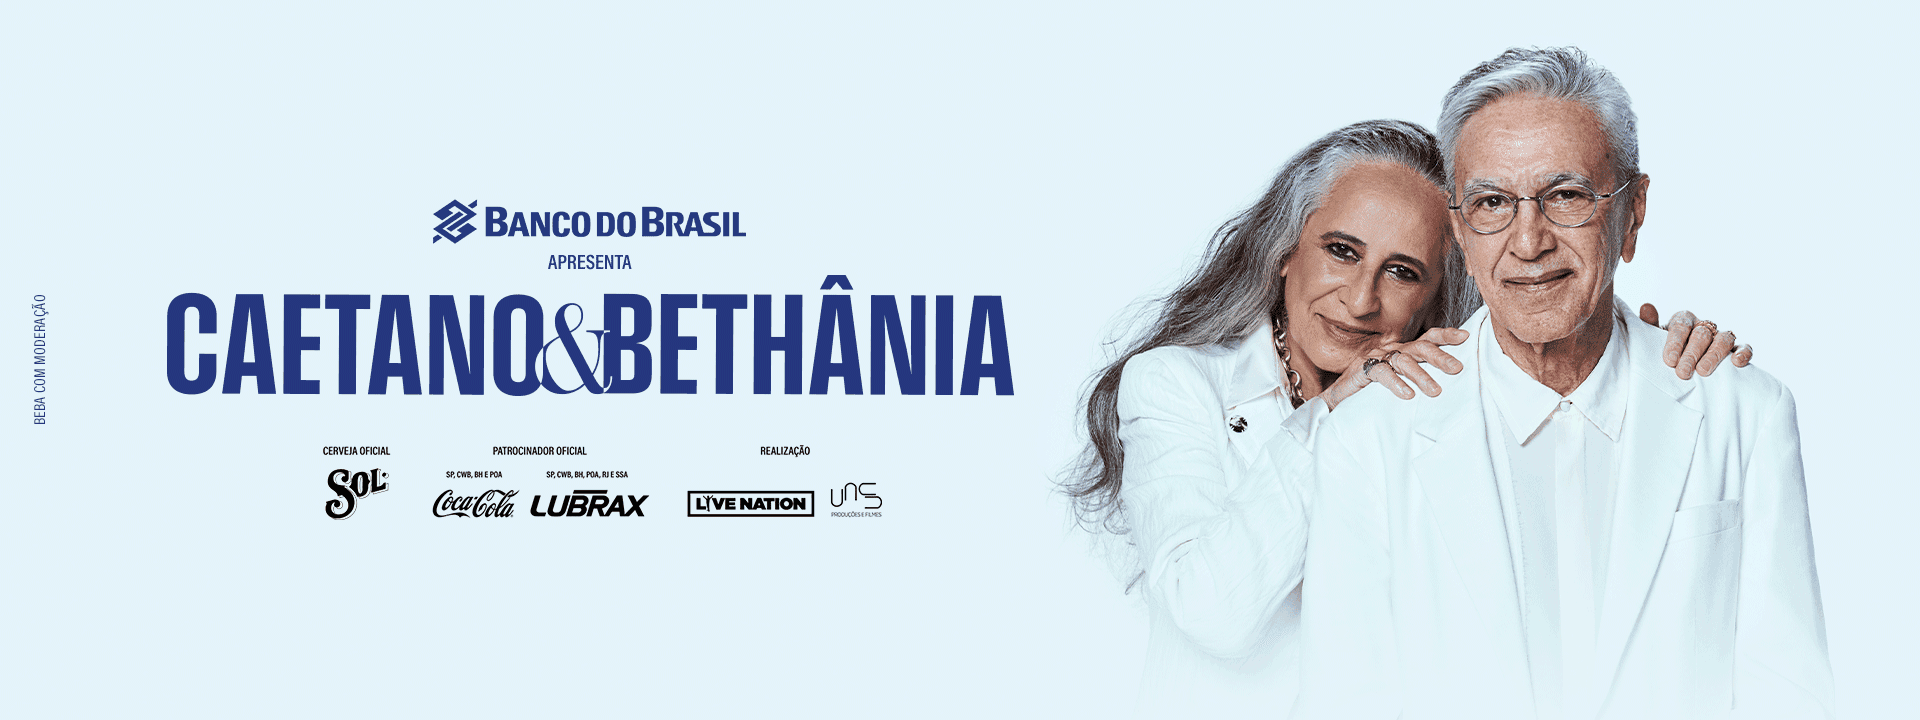 Caetano & Bethânia - Fortaleza